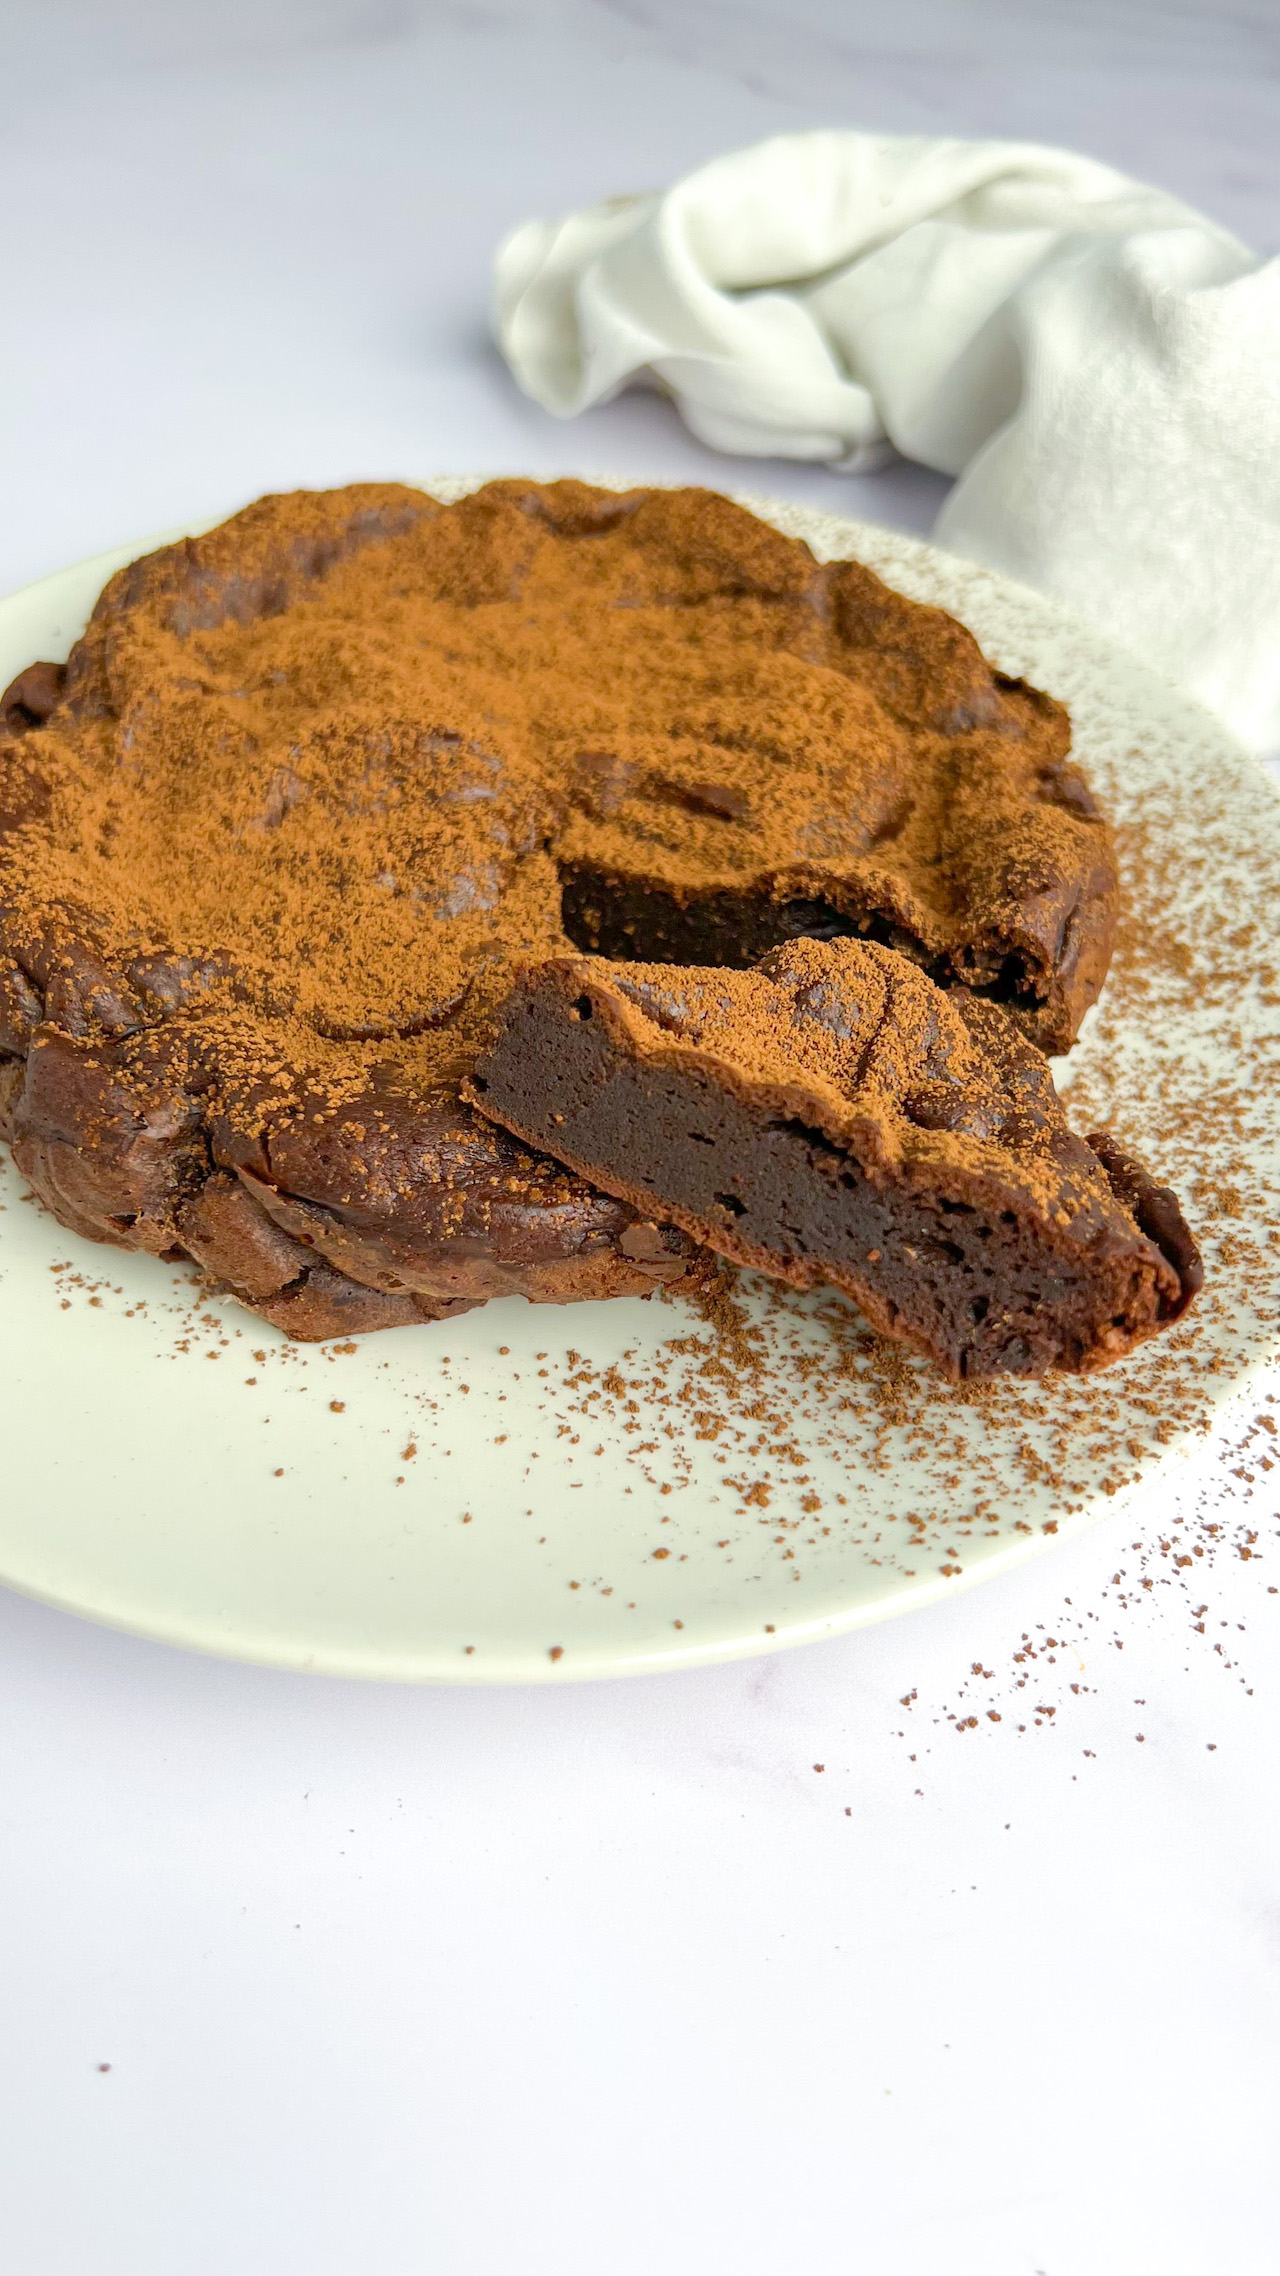 Squisita torta al cioccolato senza burro e farina, preparata con soli due ingredienti, servita su un piatto.